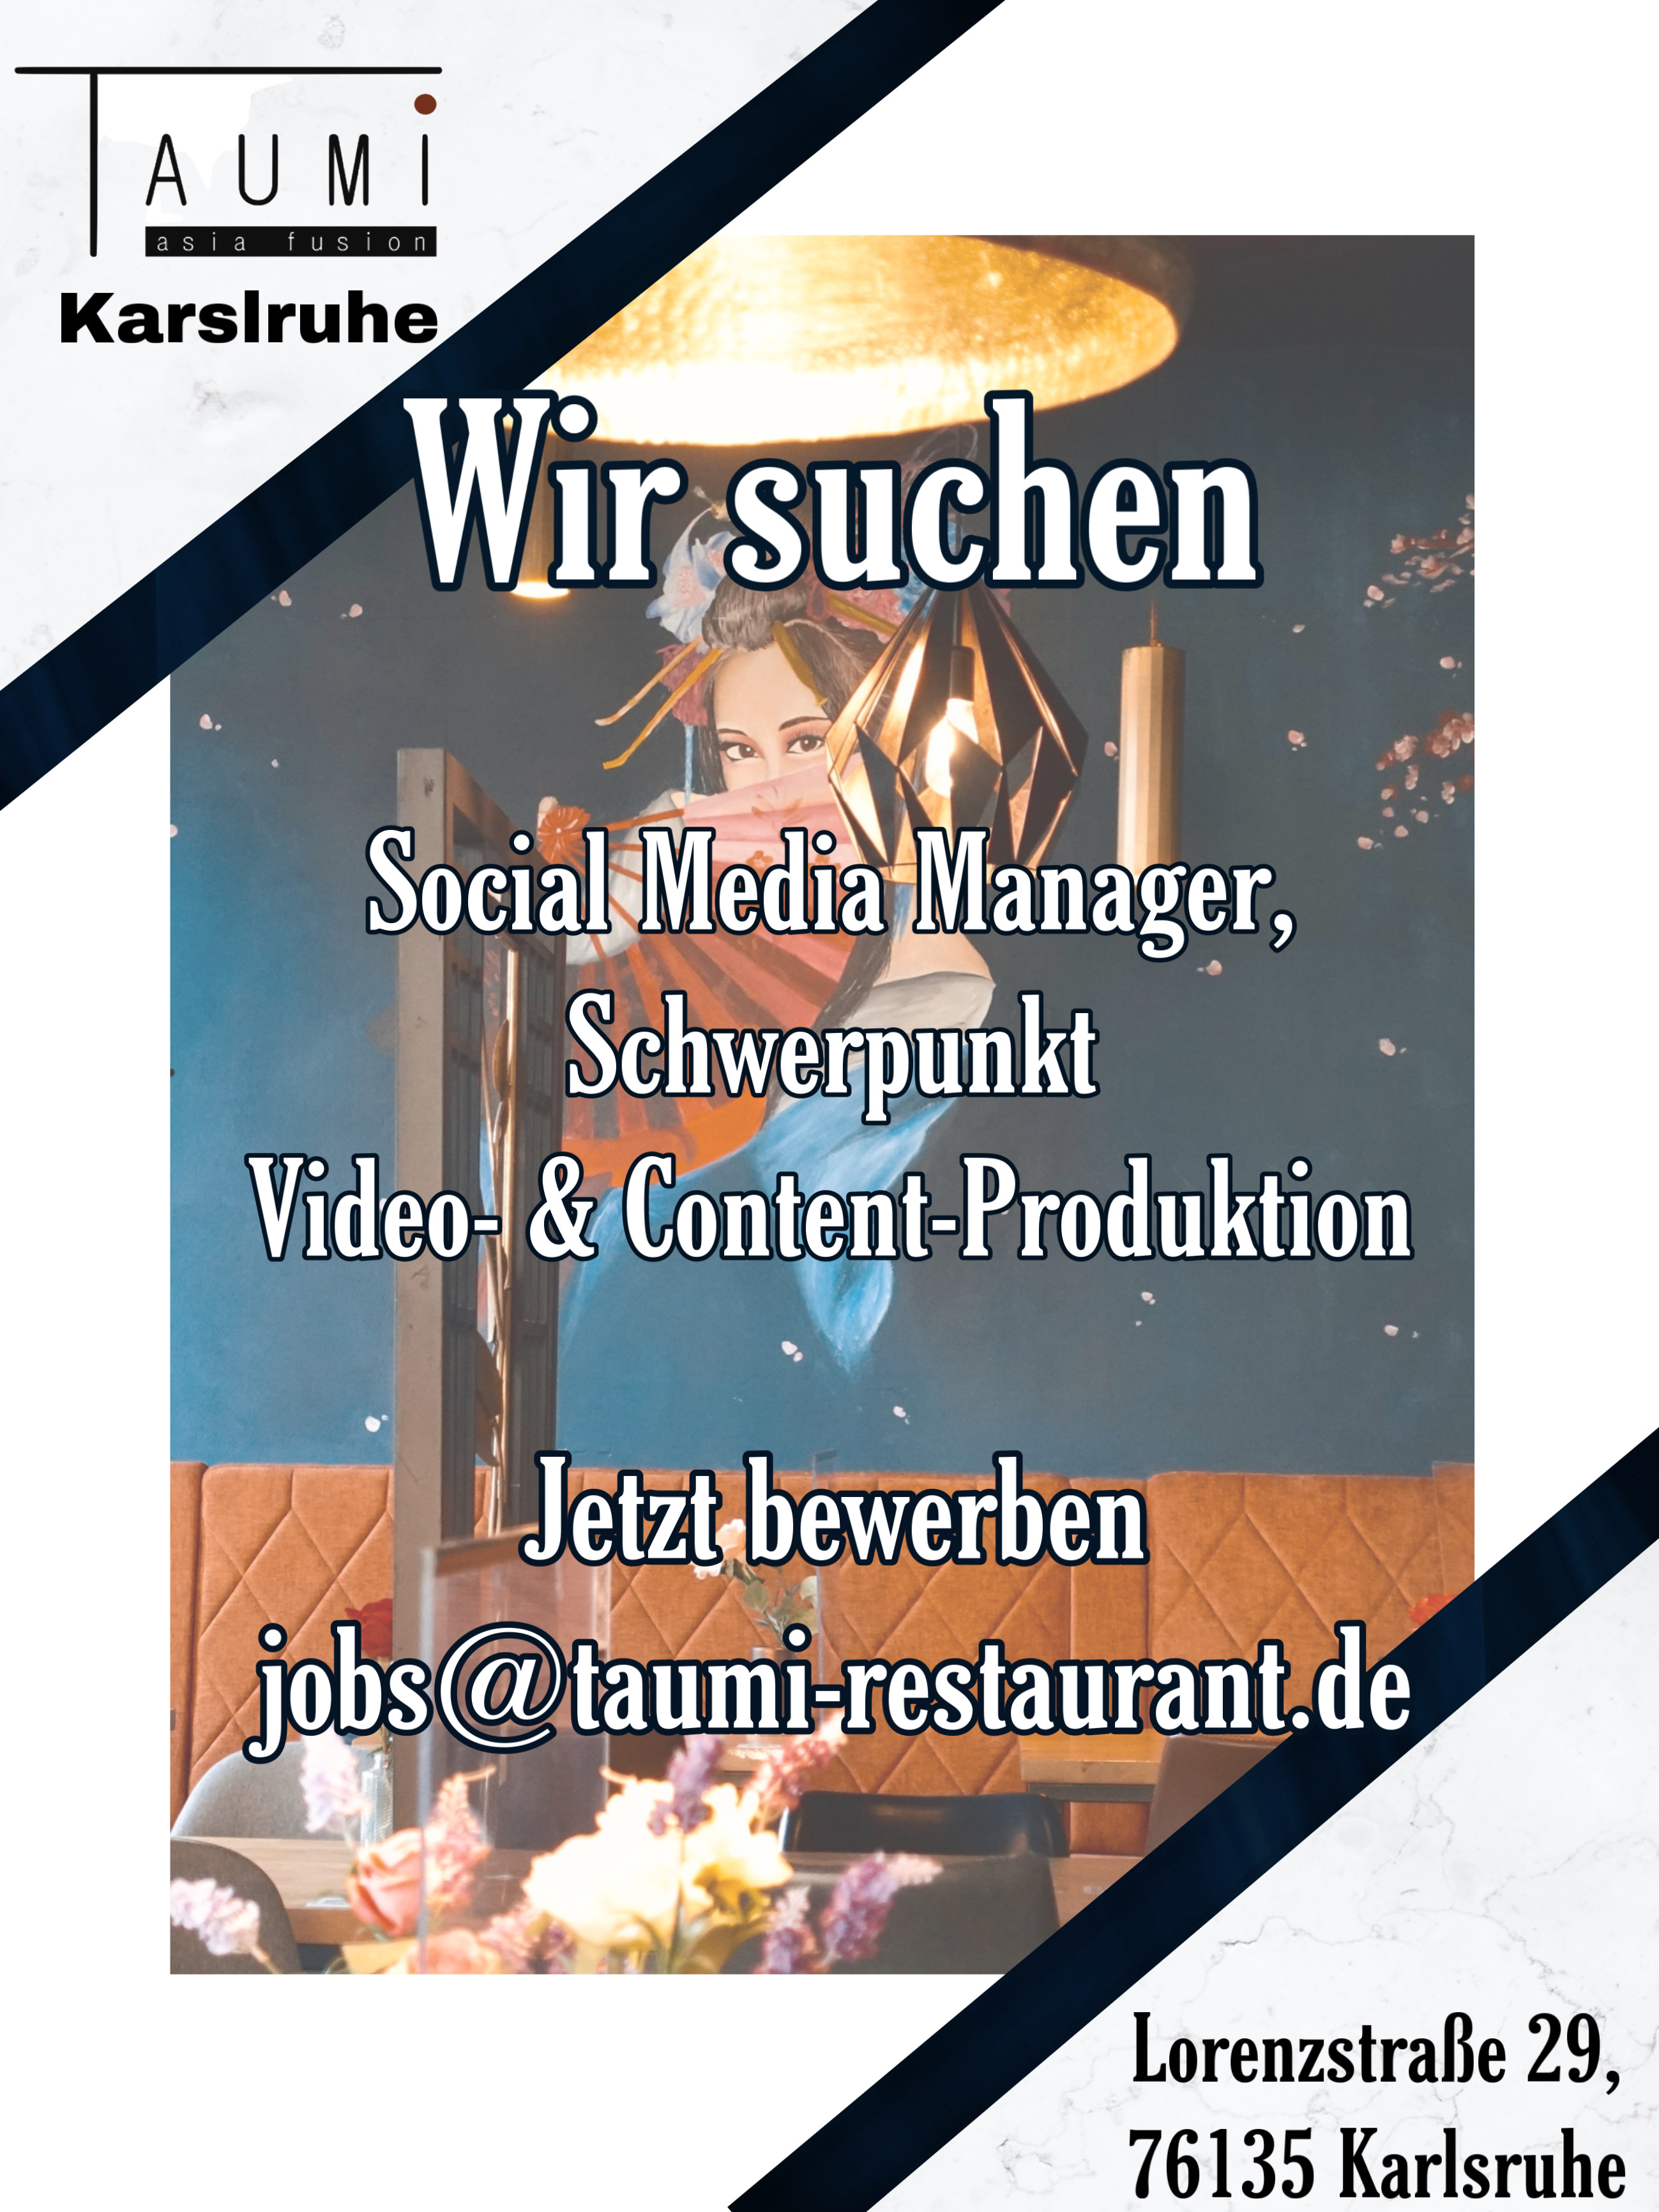 Jobangebot Karlsruhe Social Media